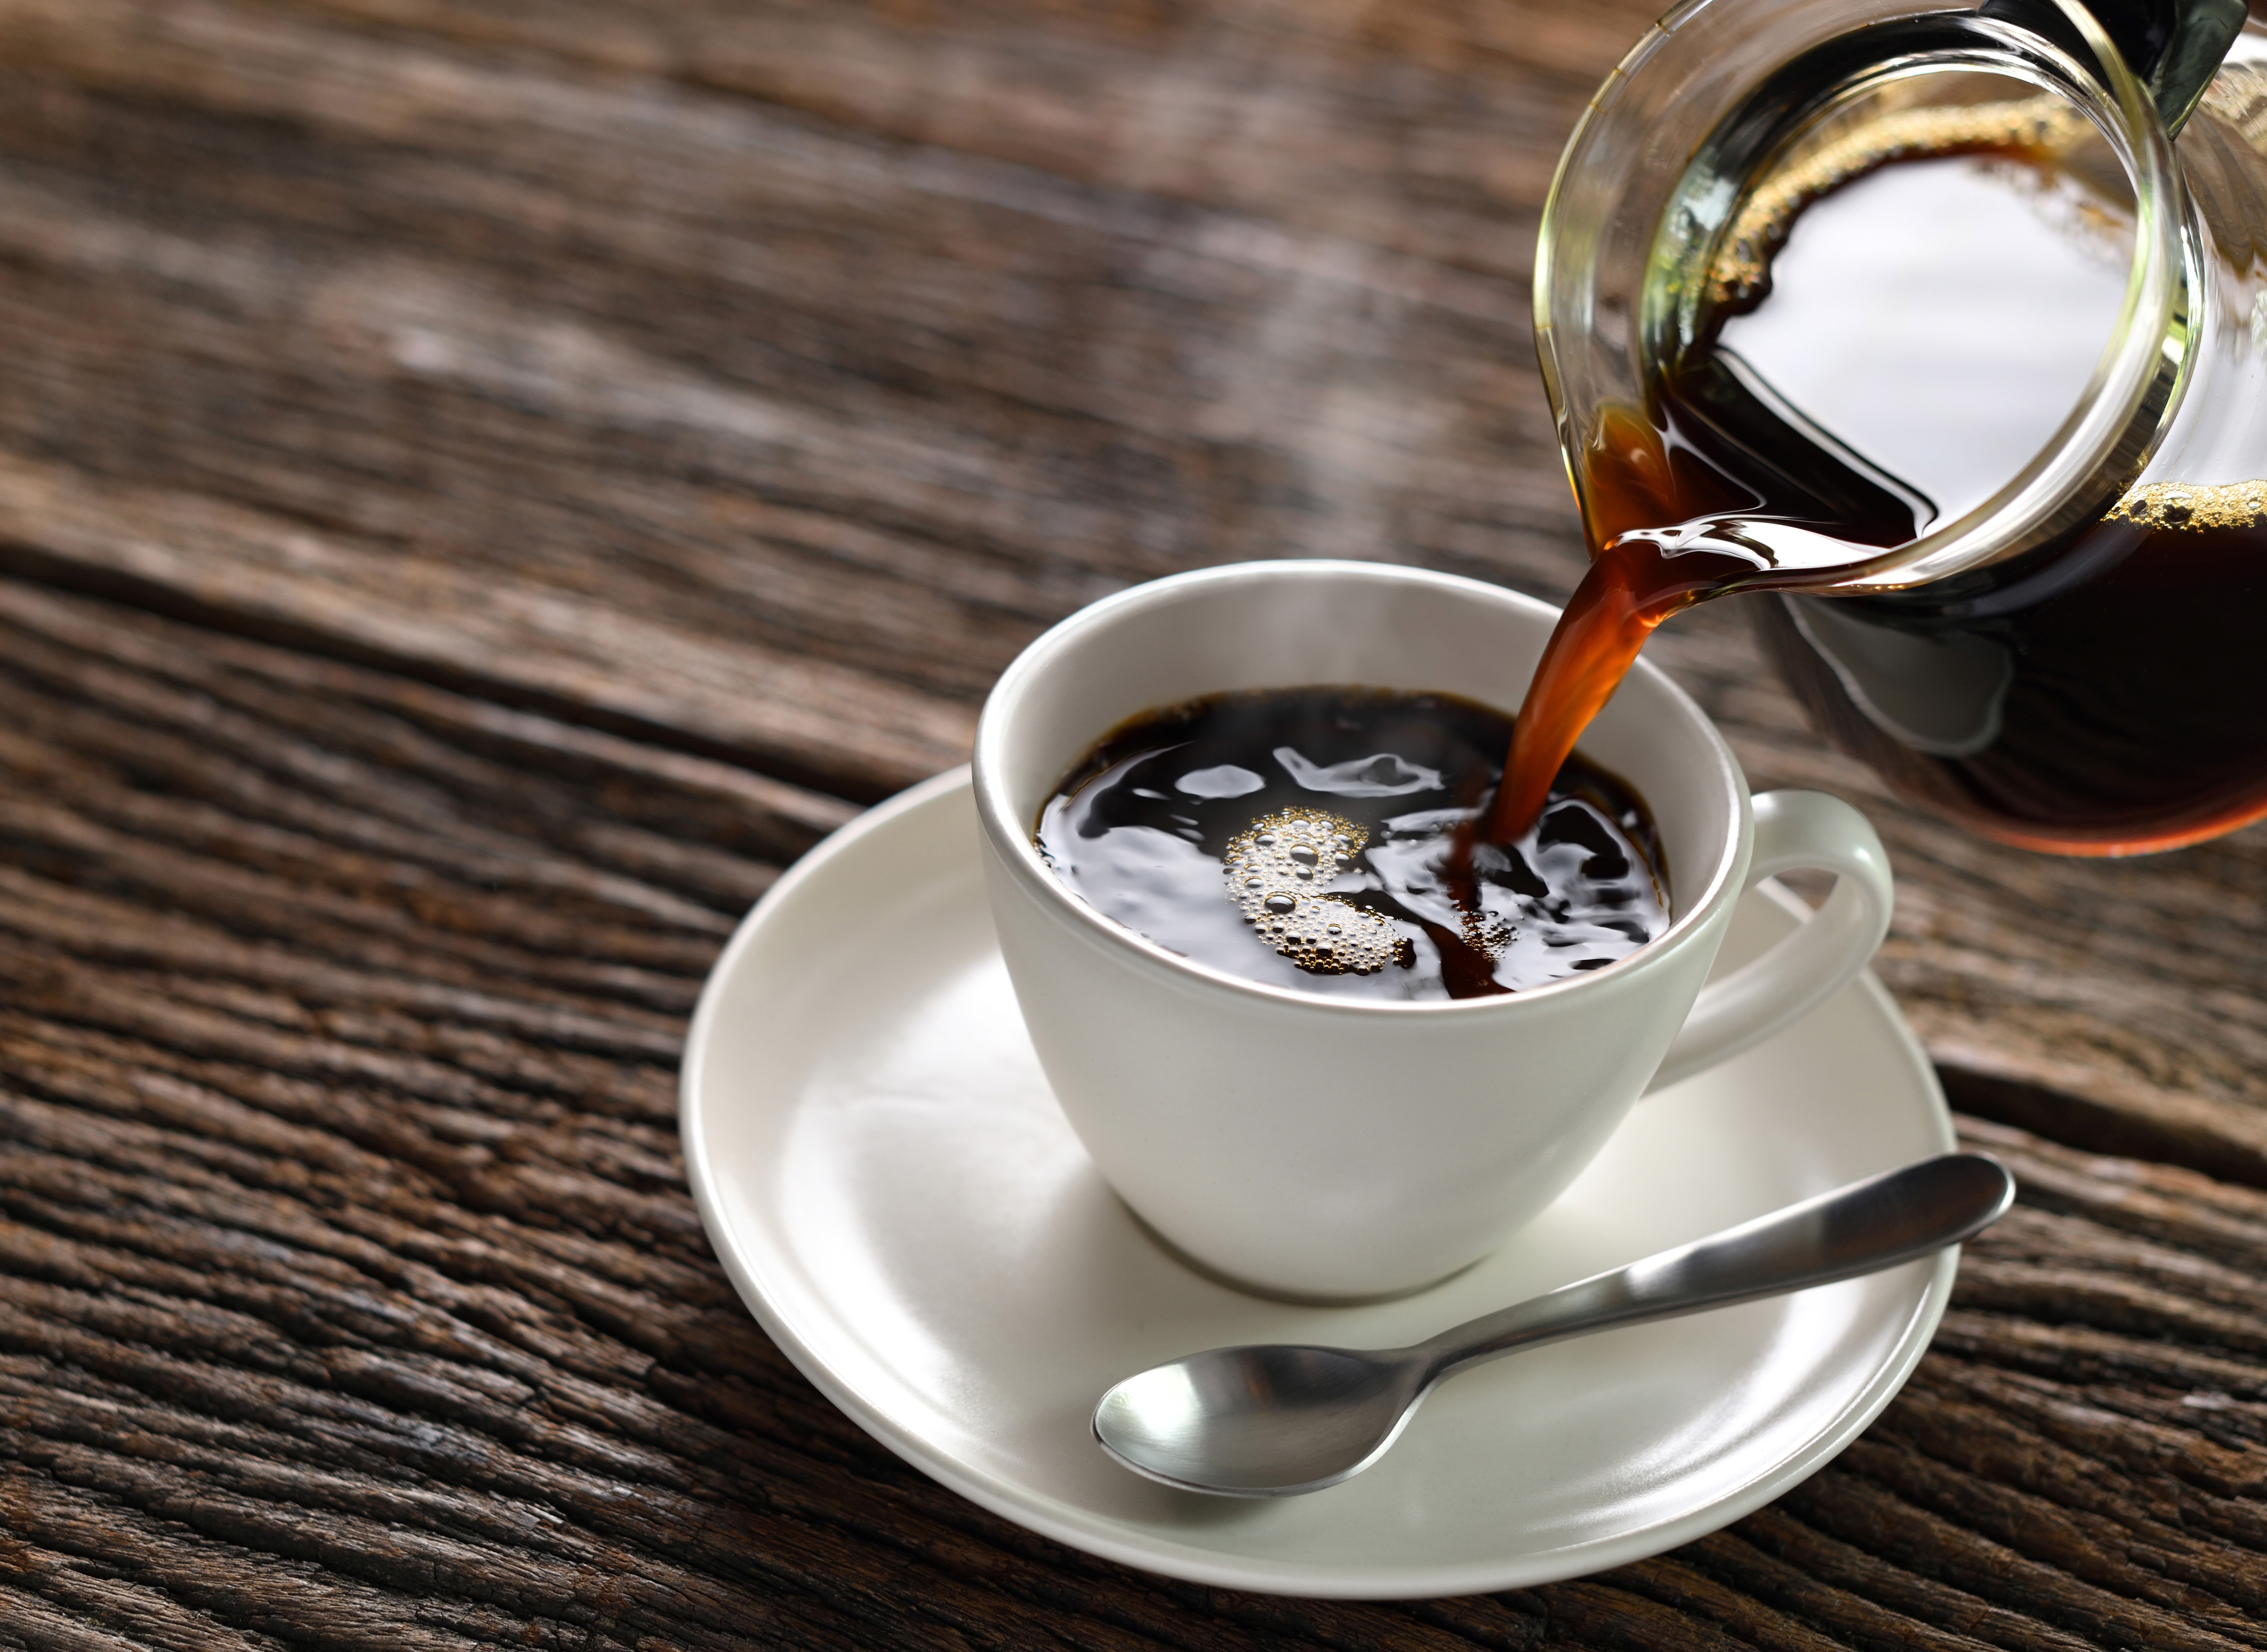 Cafeaua ar putea reduce riscul de diabet zaharat